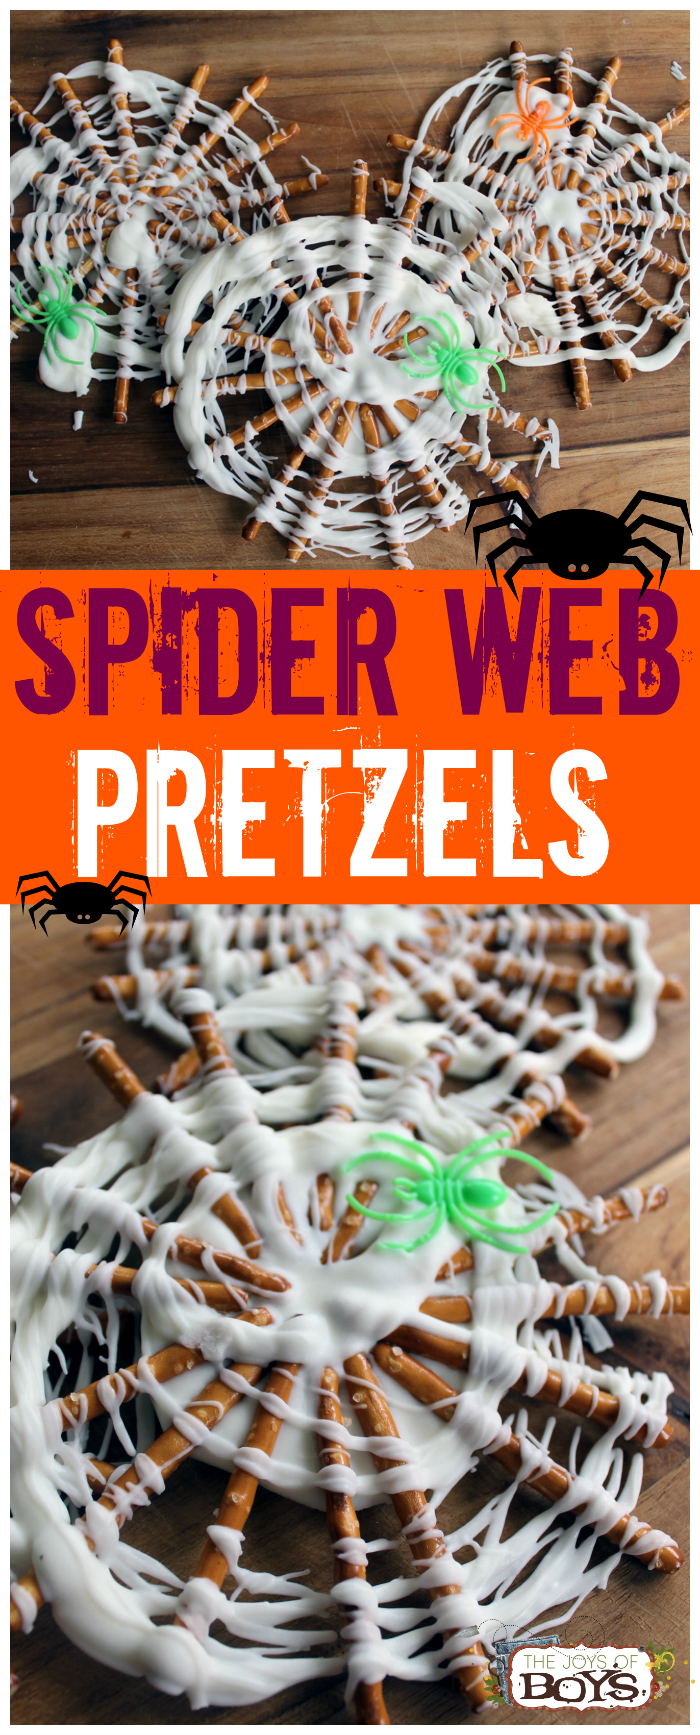 Spider Web Pretzels